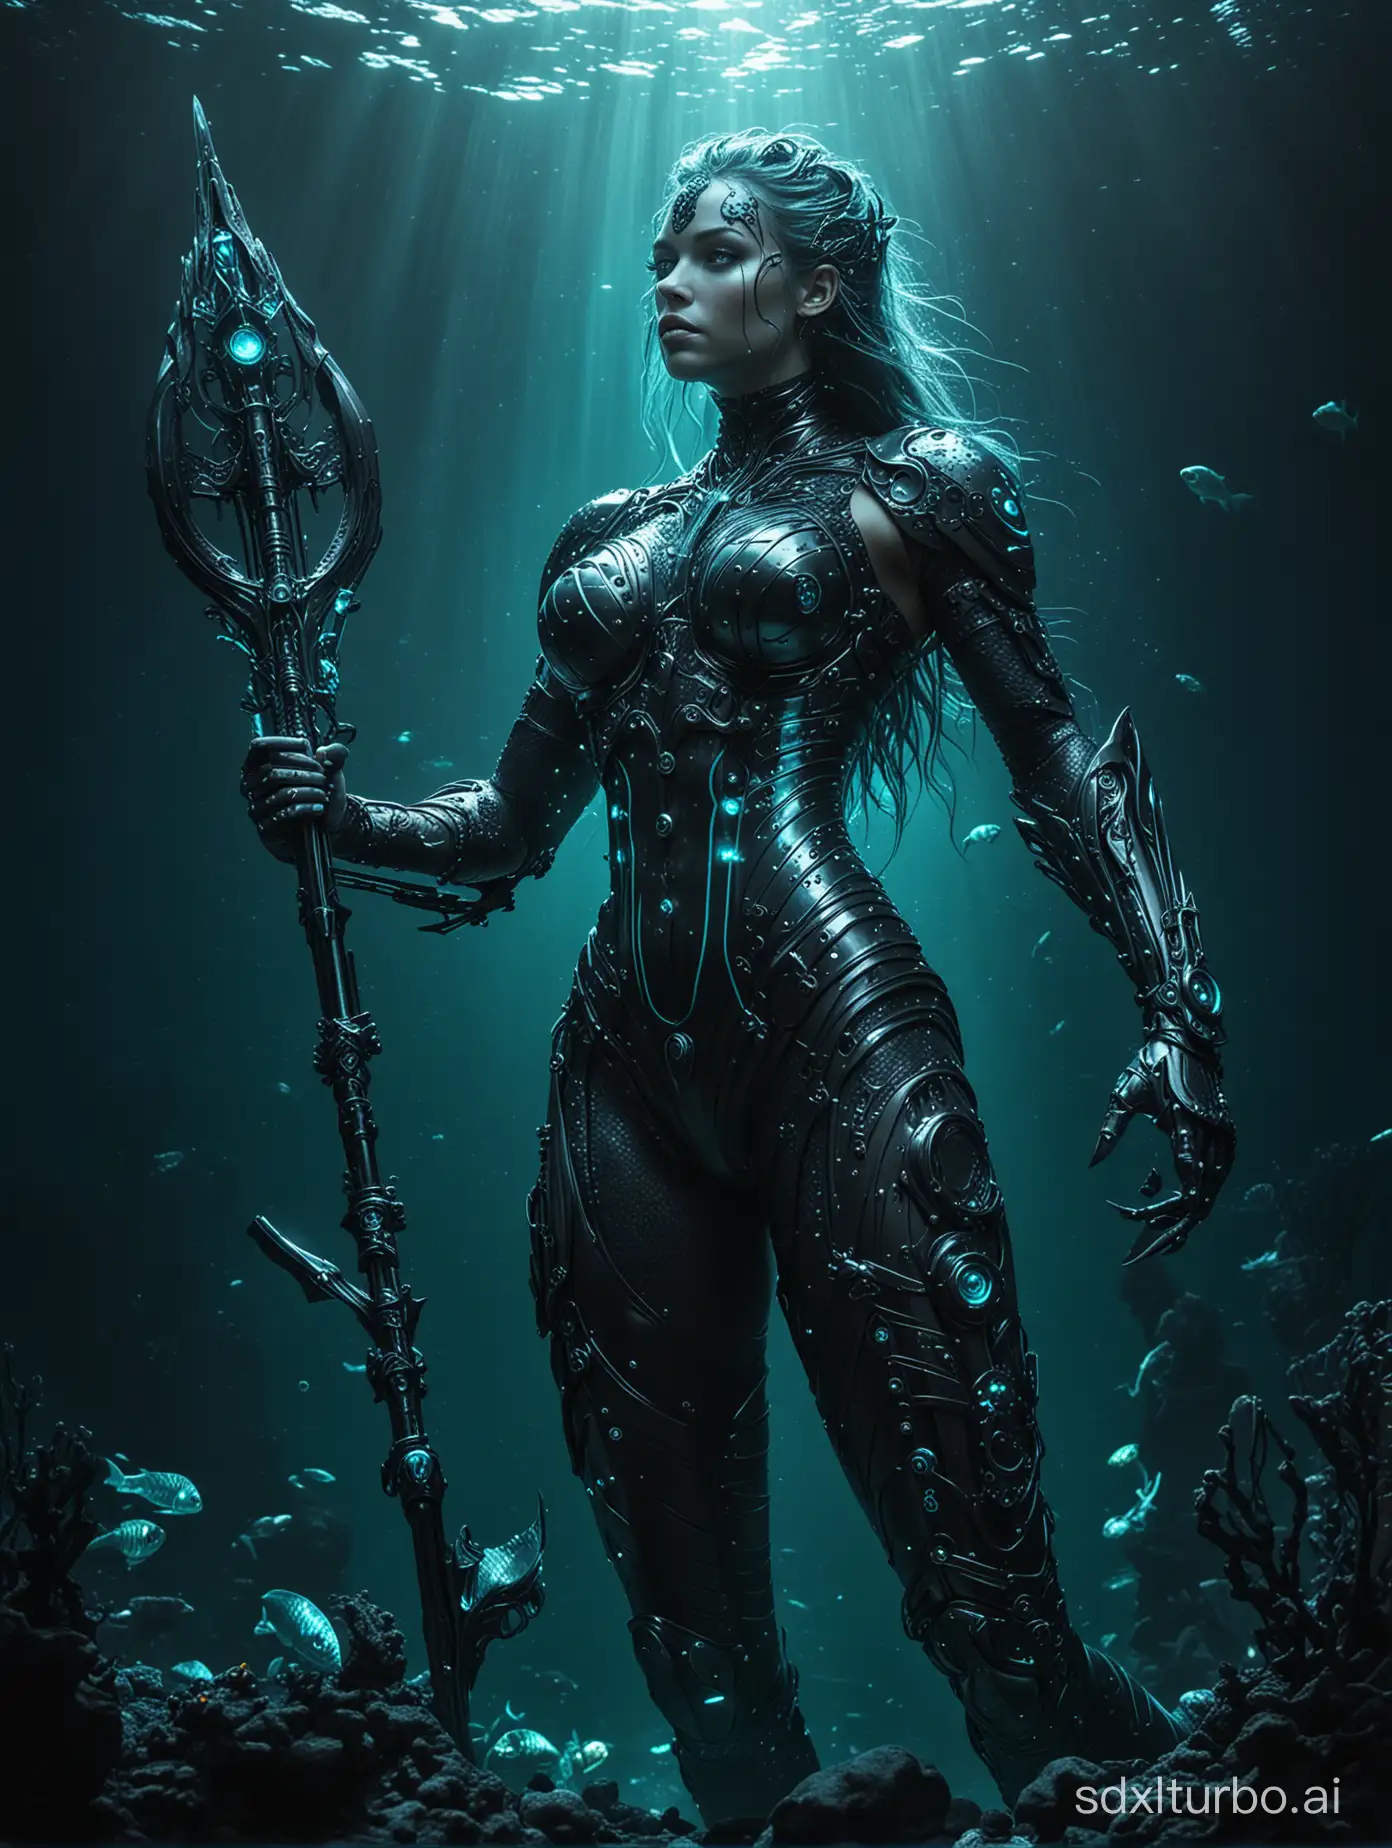 Neon-Cyborg-Mermaid-Wielding-Weapon-in-Dark-Ocean-Depths